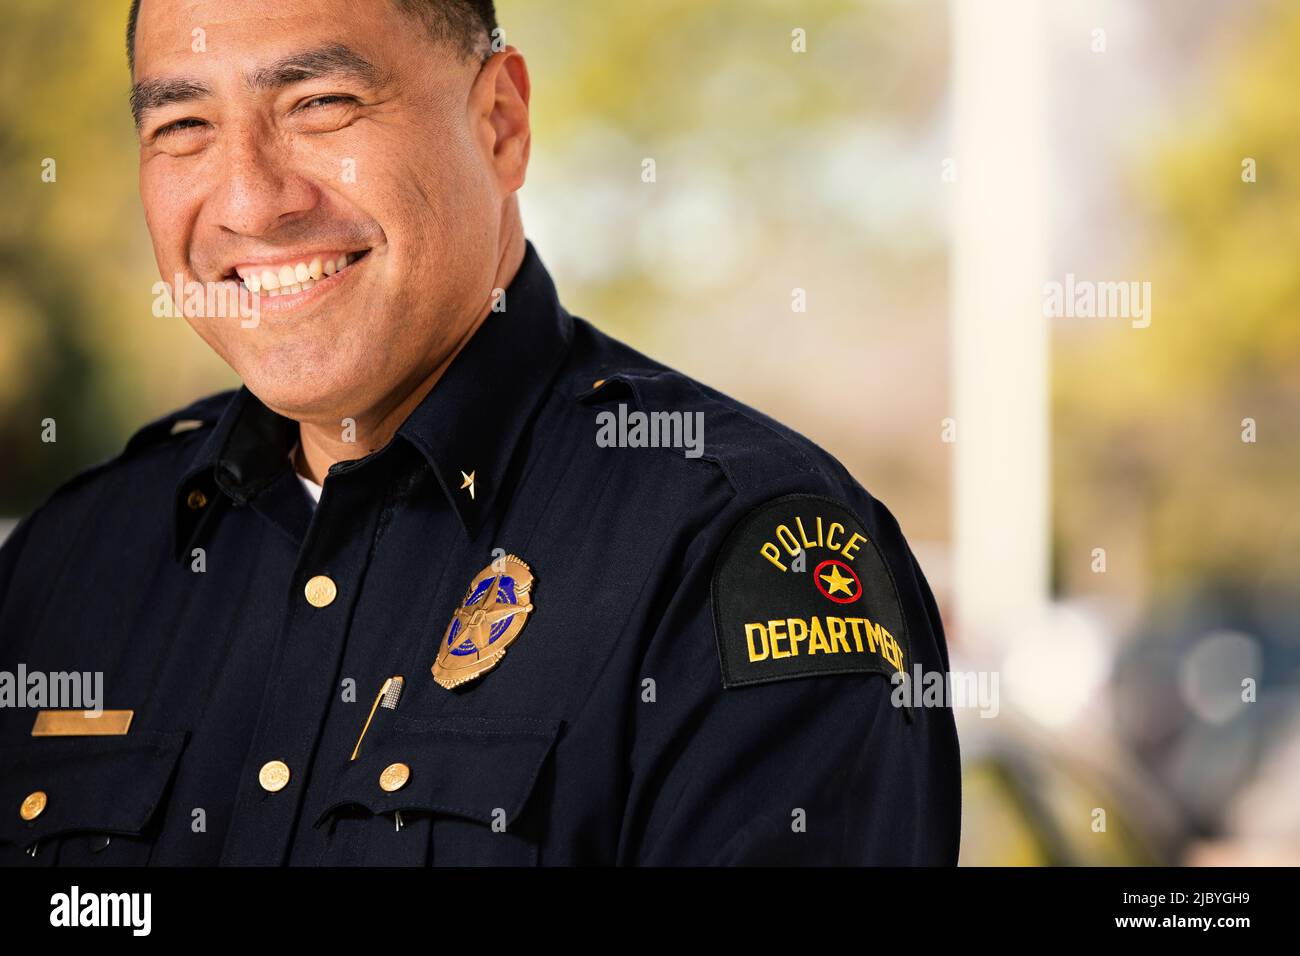 Retrato del oficial de policía parado afuera con los brazos cruzados mirando hacia la cámara sonriendo Foto de stock